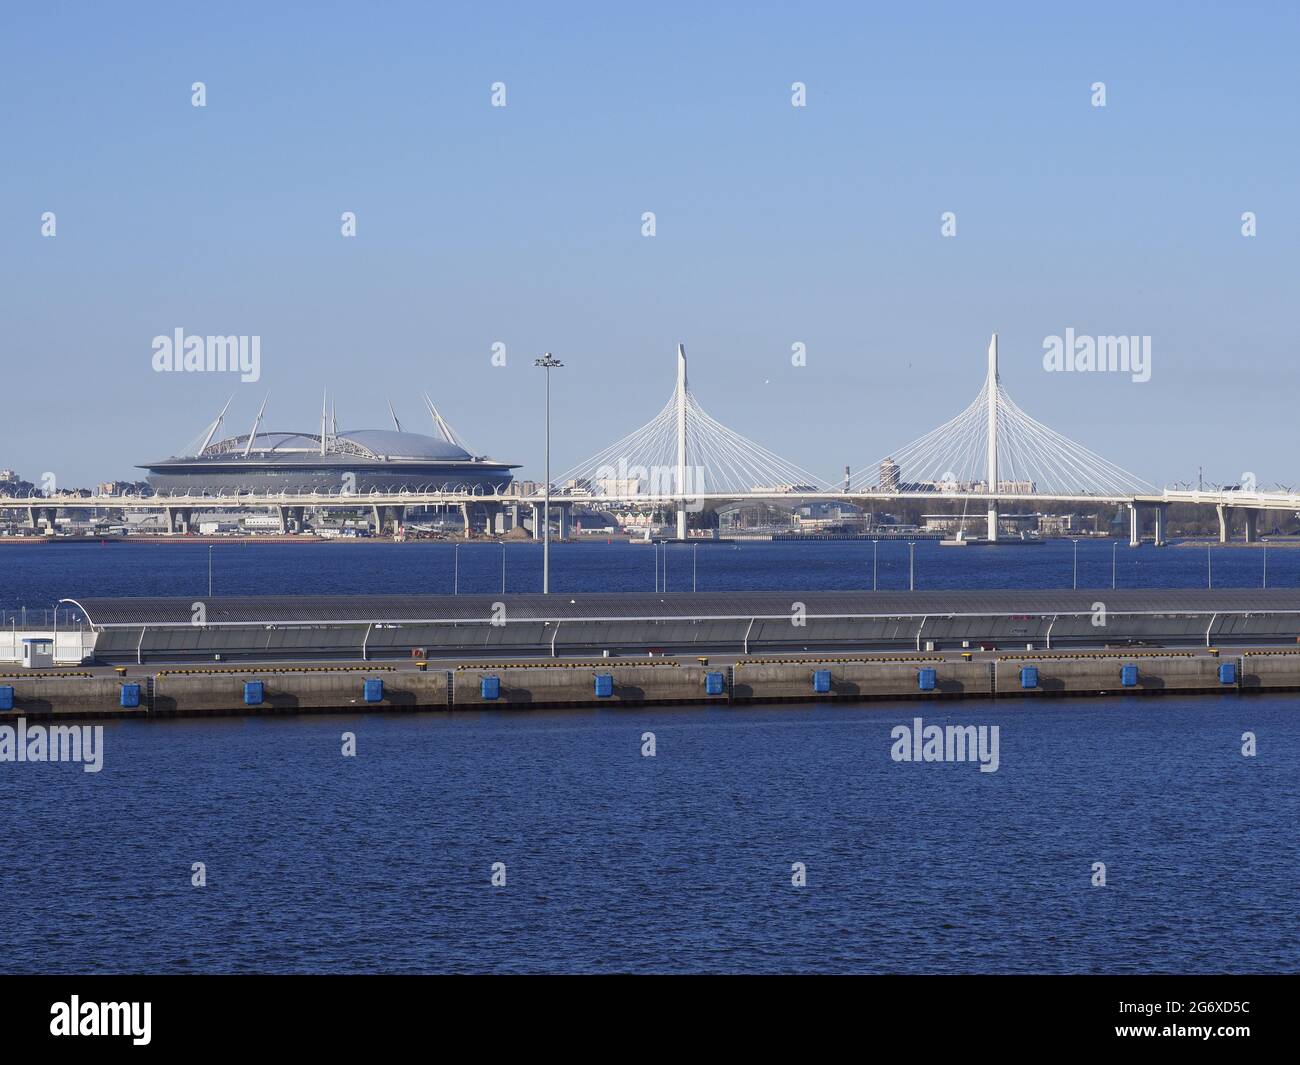 St Petersberg ou le stade de football de Krestovsky Russie sur la côte Baltique en journée Banque D'Images